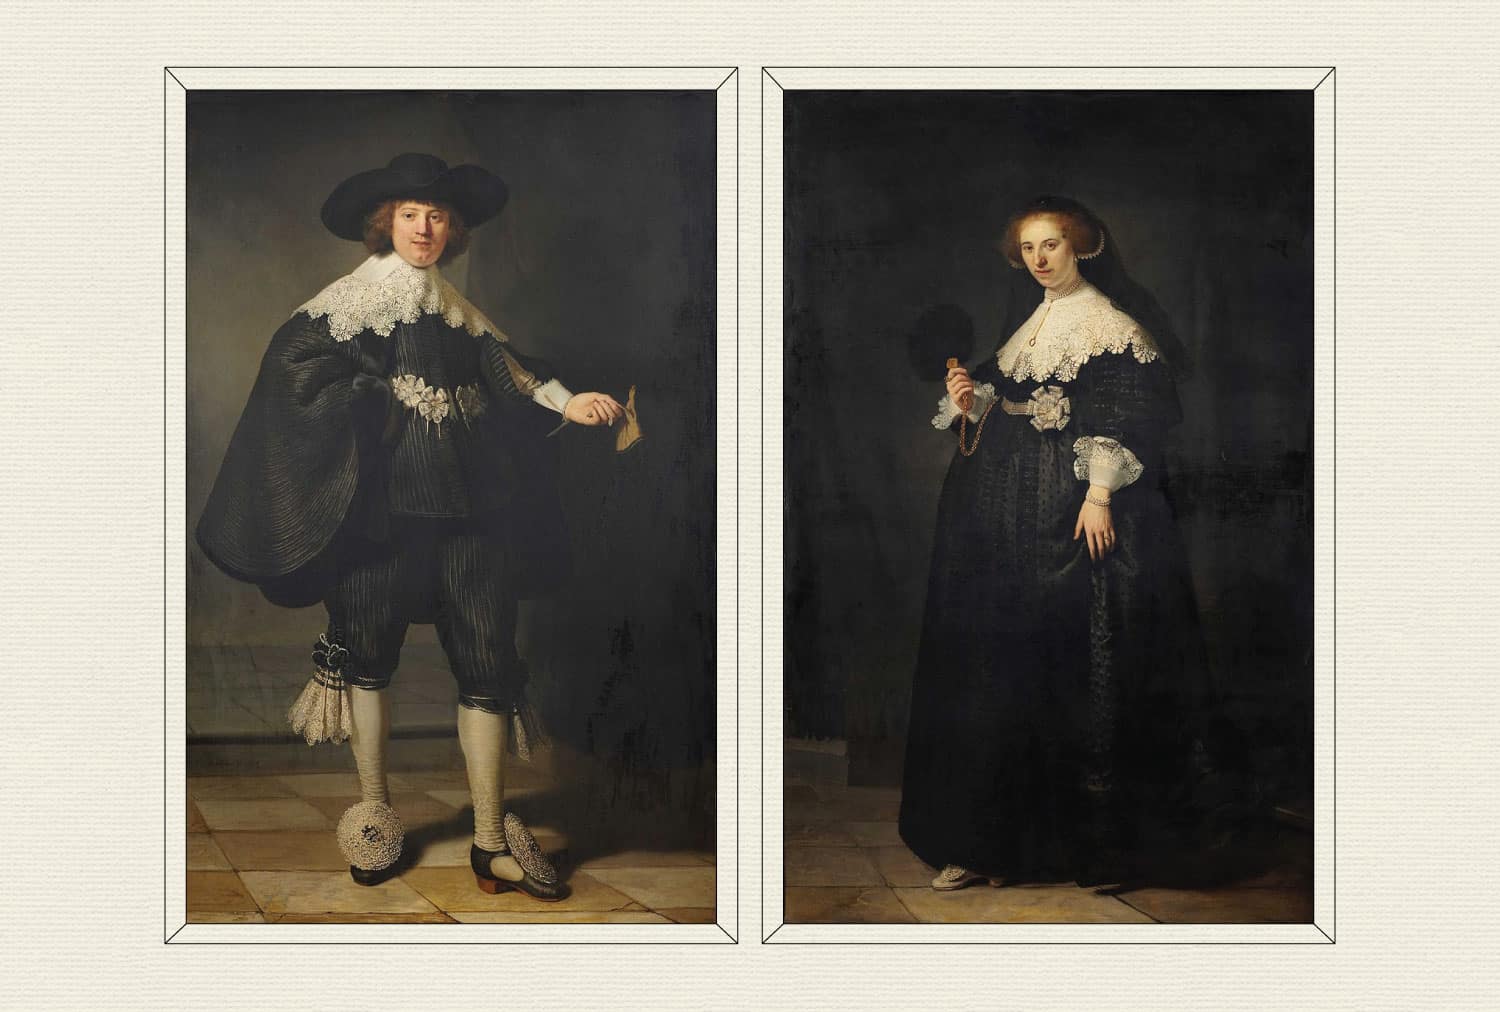 Pendant portraits of Maerten Soolmans and Oopjen Coppit, 1634, by Rembrandt van Rijn